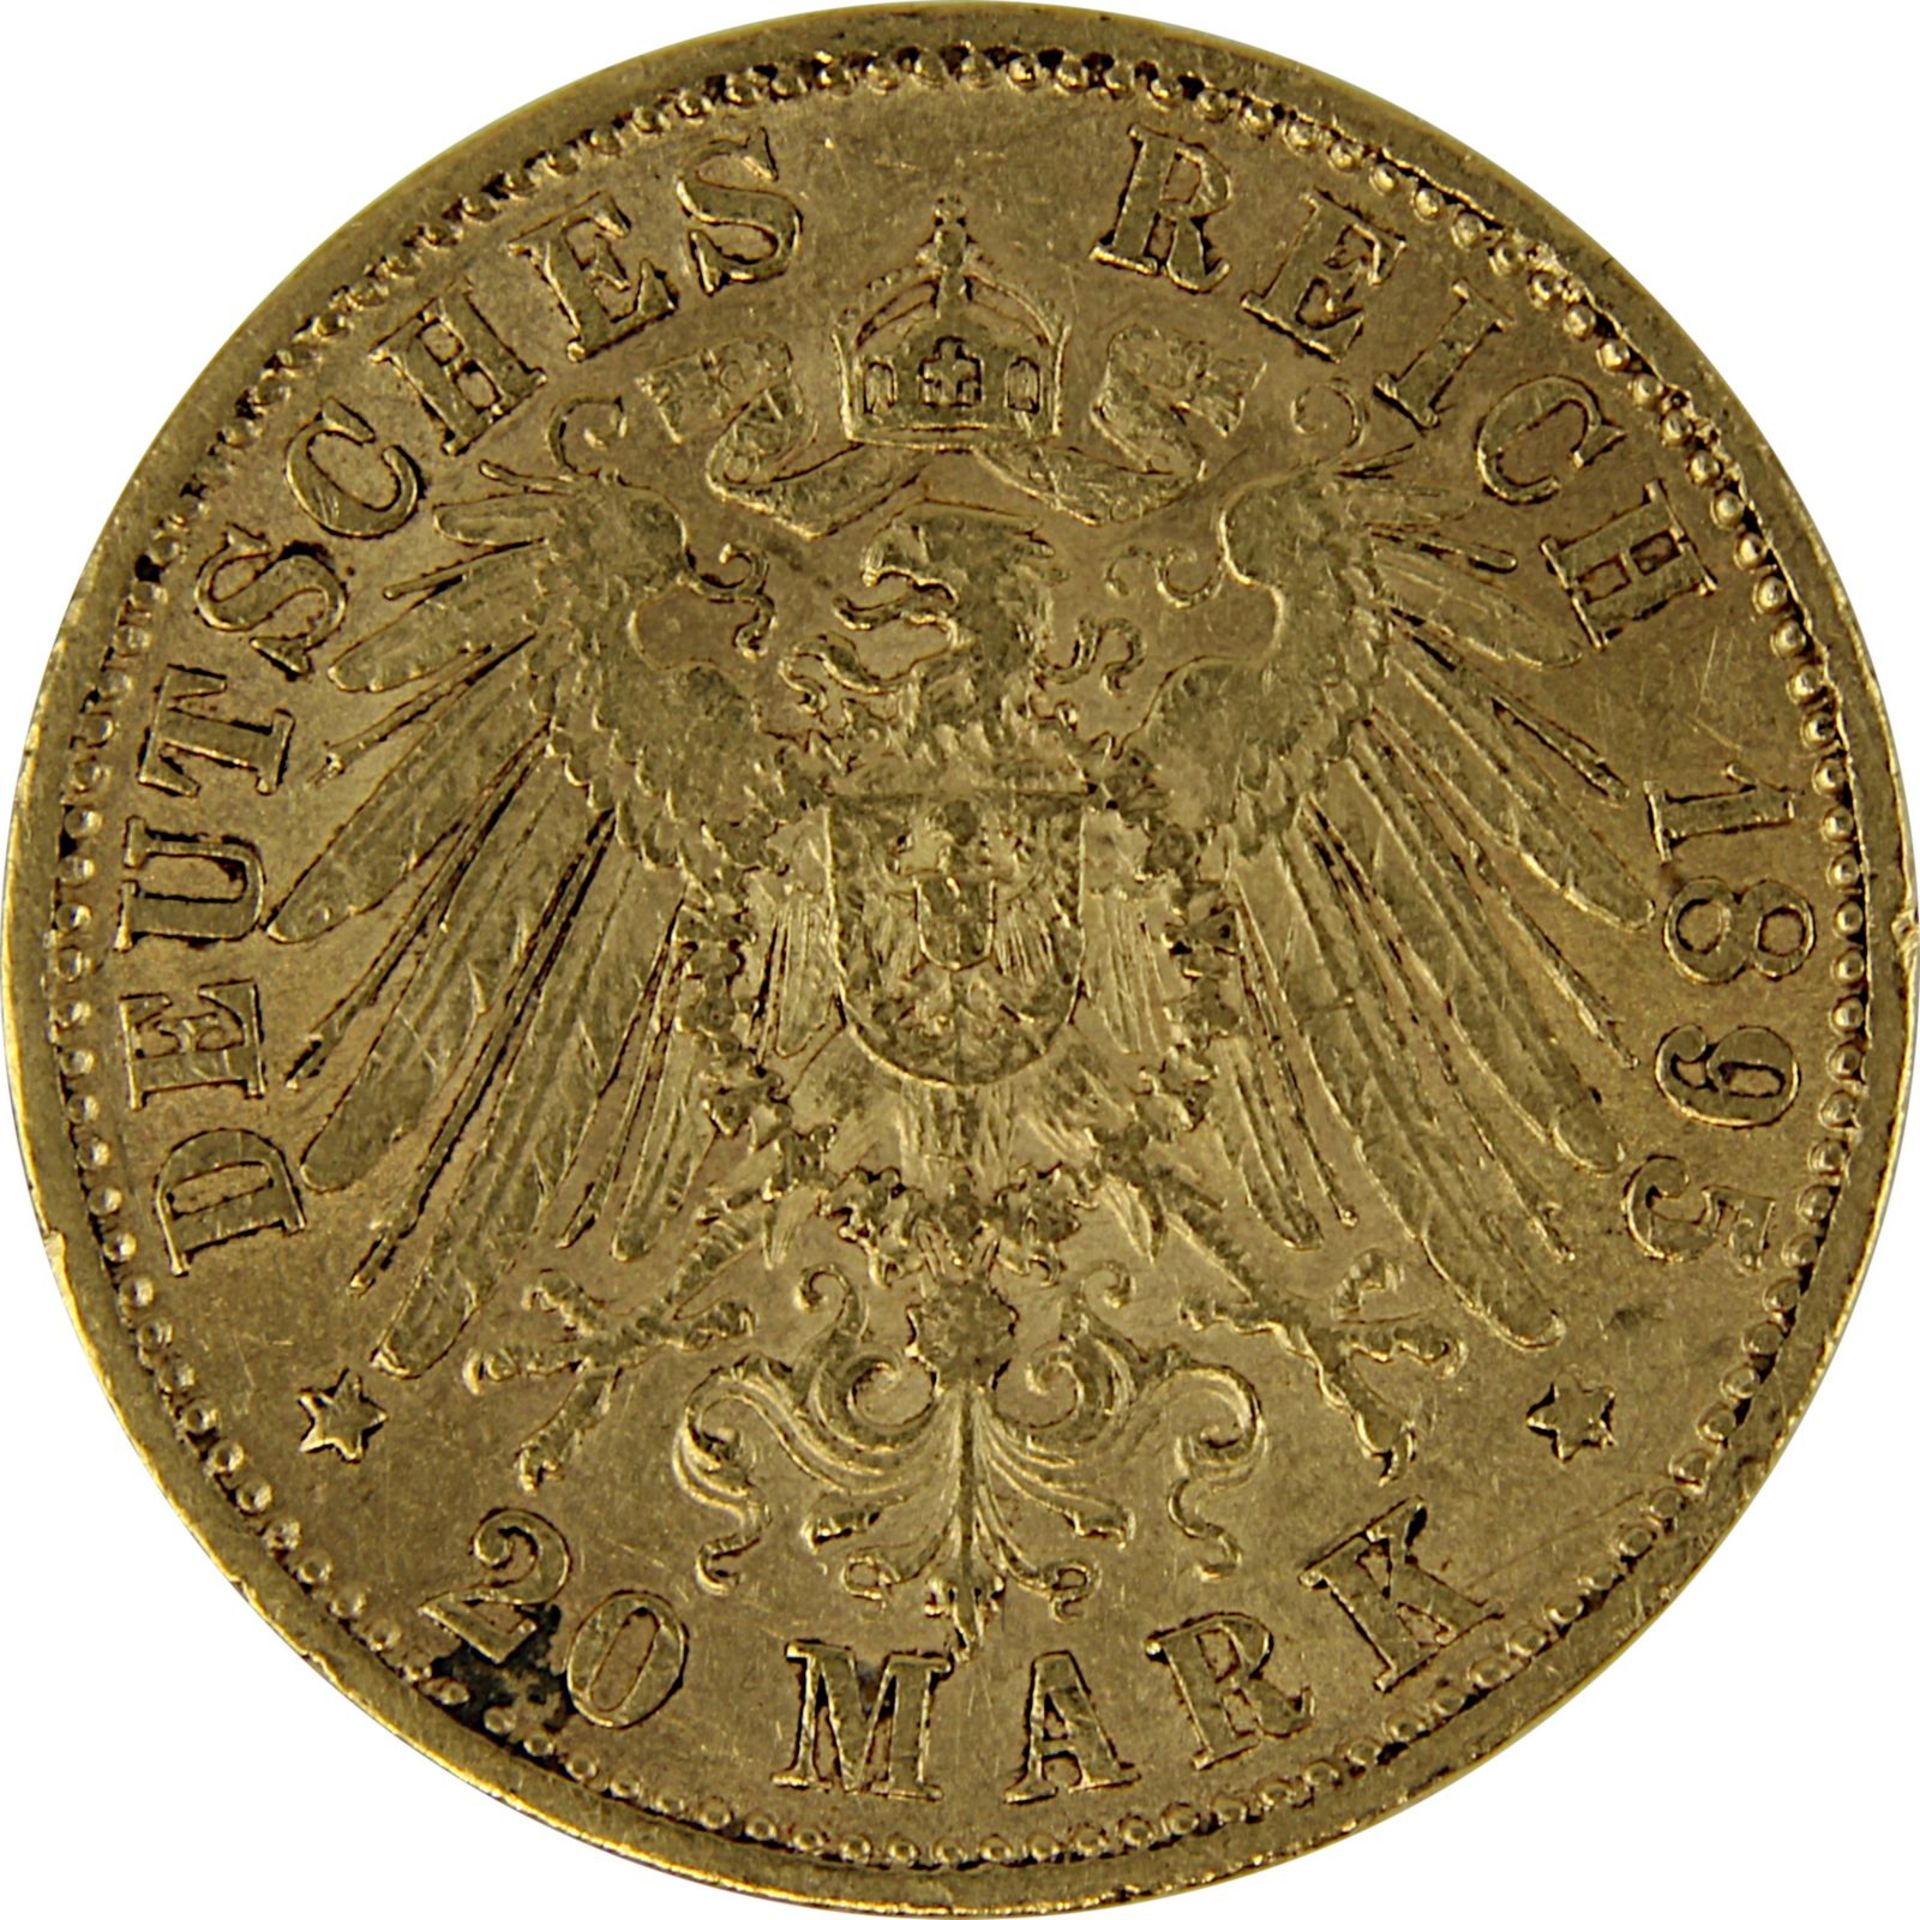 Goldmünze zu 20 Mark, Bayern - Deutsches Reich 1895, Avers: Kopf Otto König von Bayern nach links u. - Bild 3 aus 3